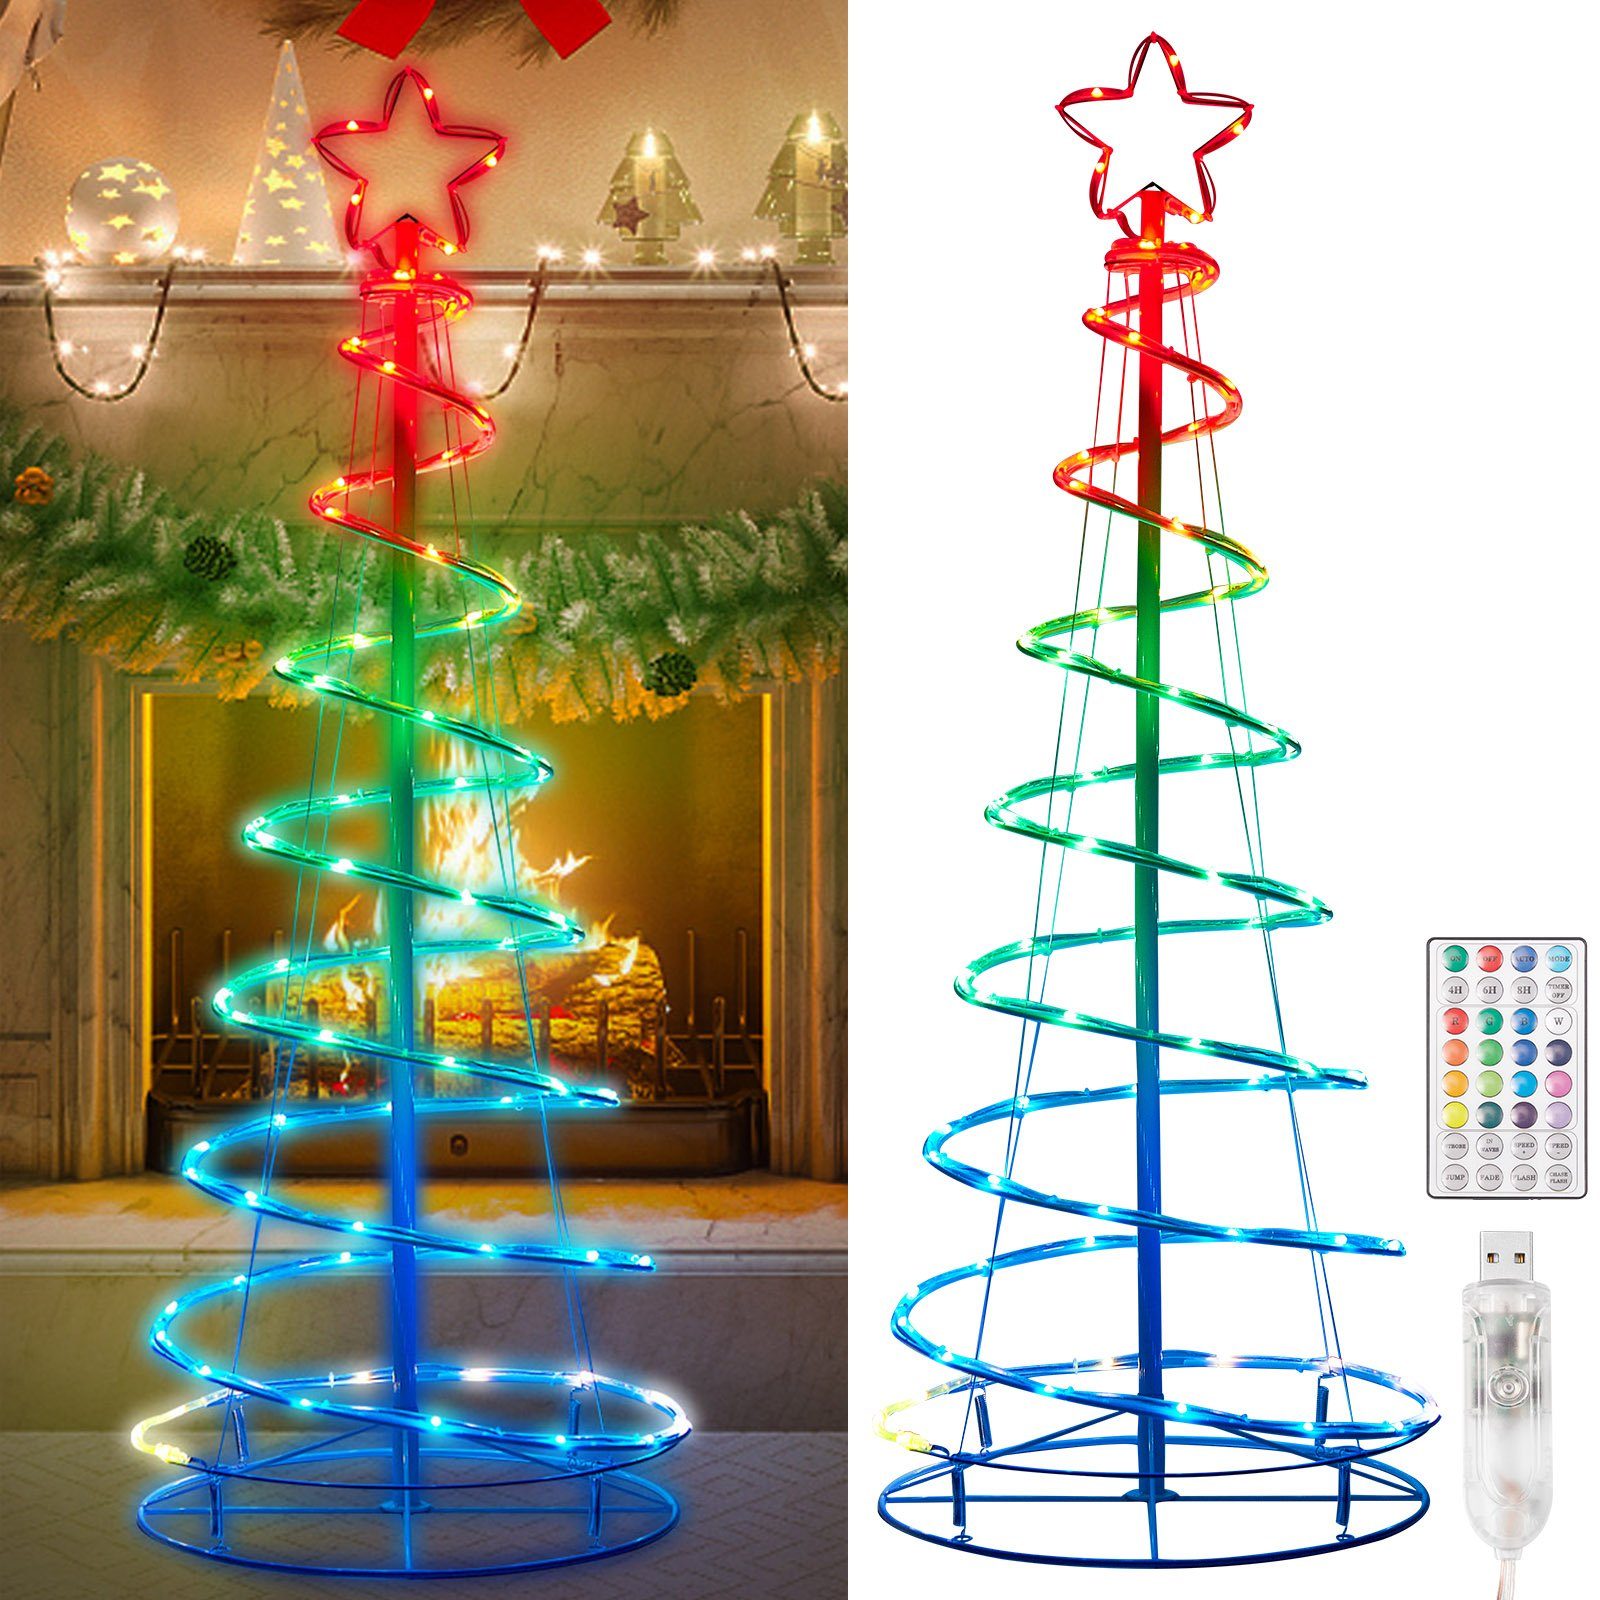 Sunicol LED-Lichterkette 1.2m/1.5m/1.8m Weihnachtsbaum Bäume Licht, RGBW Beleuchtung Deko, 12 Beleuchtungsmodi, Timer&Fernsteuerung, Zusammenklappbar, USB